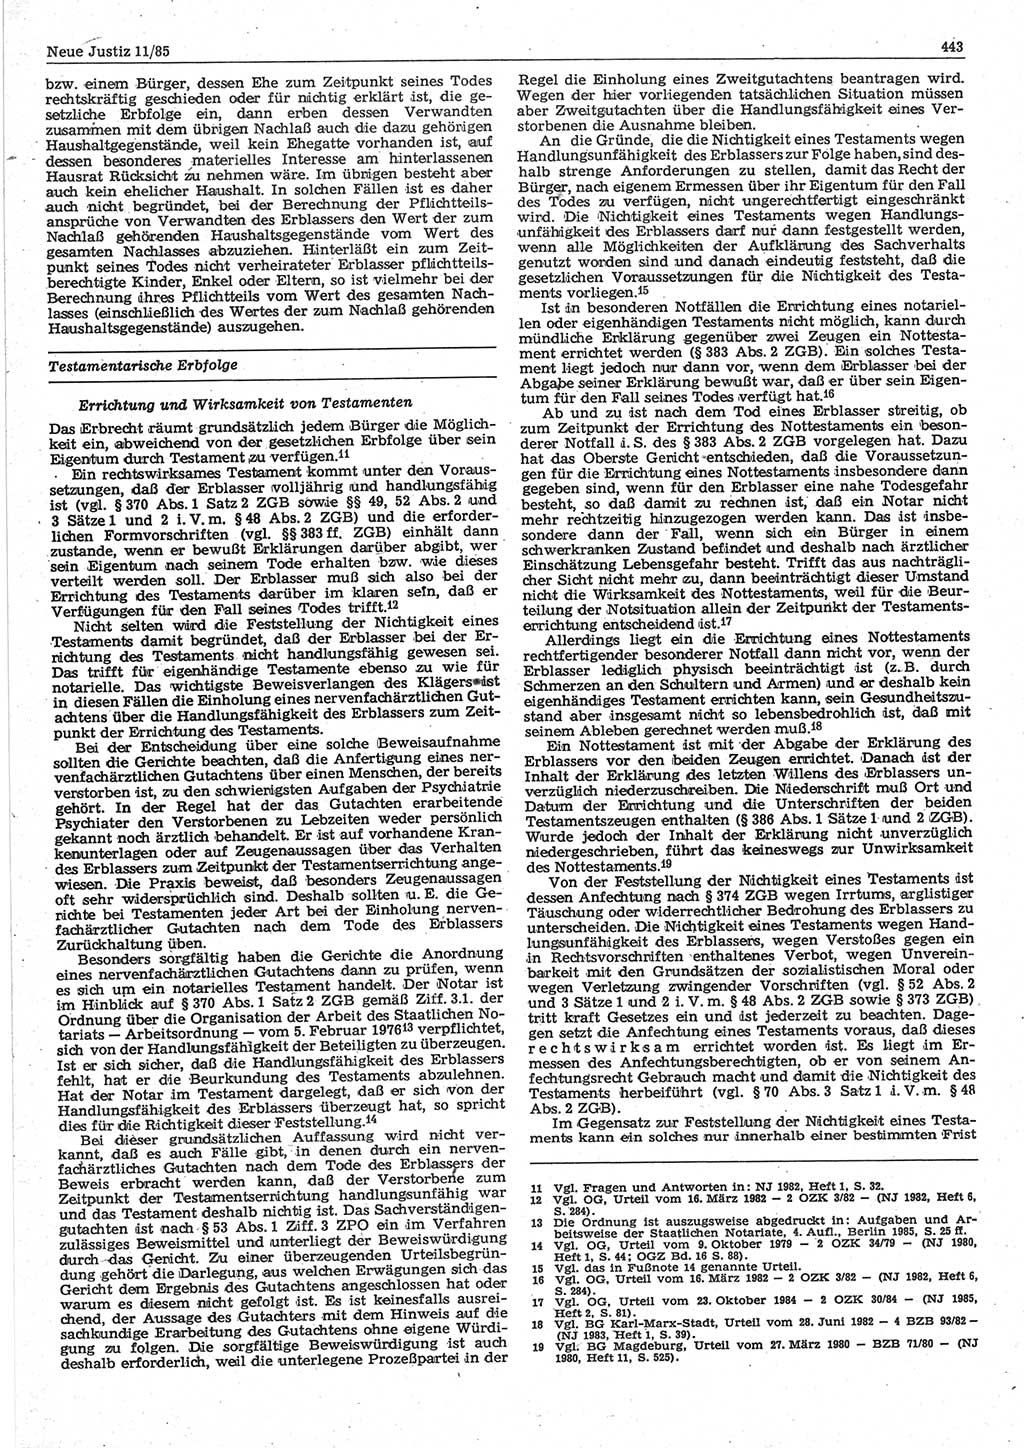 Neue Justiz (NJ), Zeitschrift für sozialistisches Recht und Gesetzlichkeit [Deutsche Demokratische Republik (DDR)], 39. Jahrgang 1985, Seite 443 (NJ DDR 1985, S. 443)